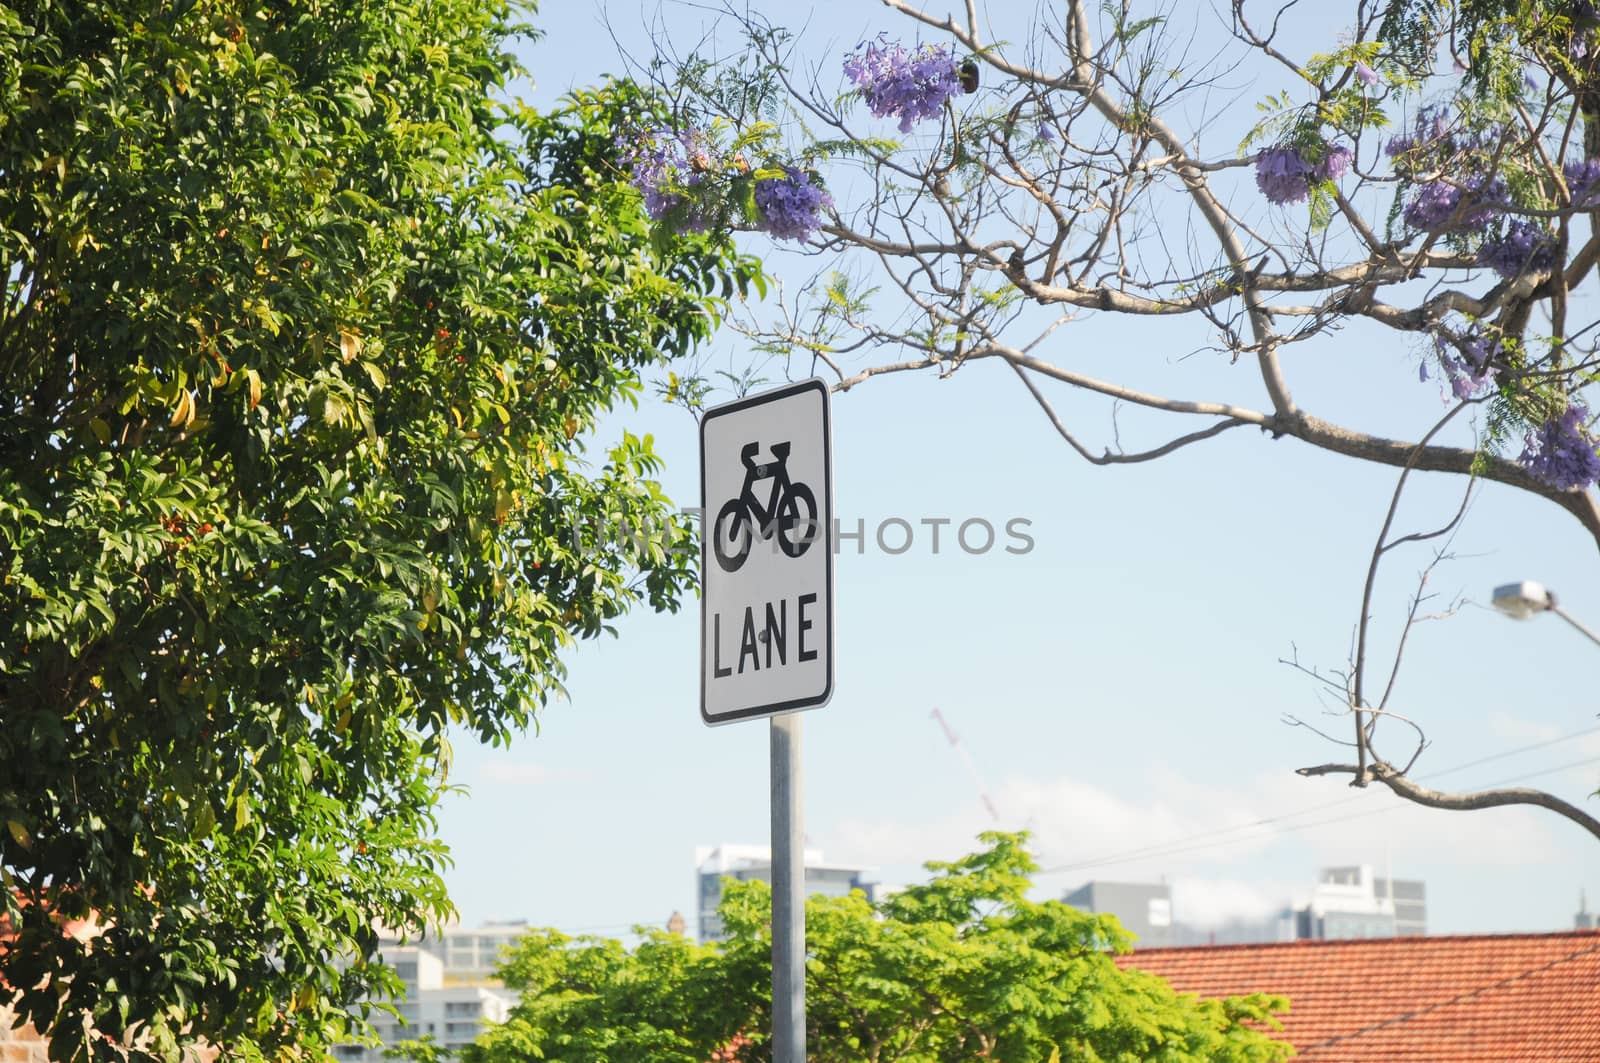 Bike lane sign on a pole by eyeofpaul